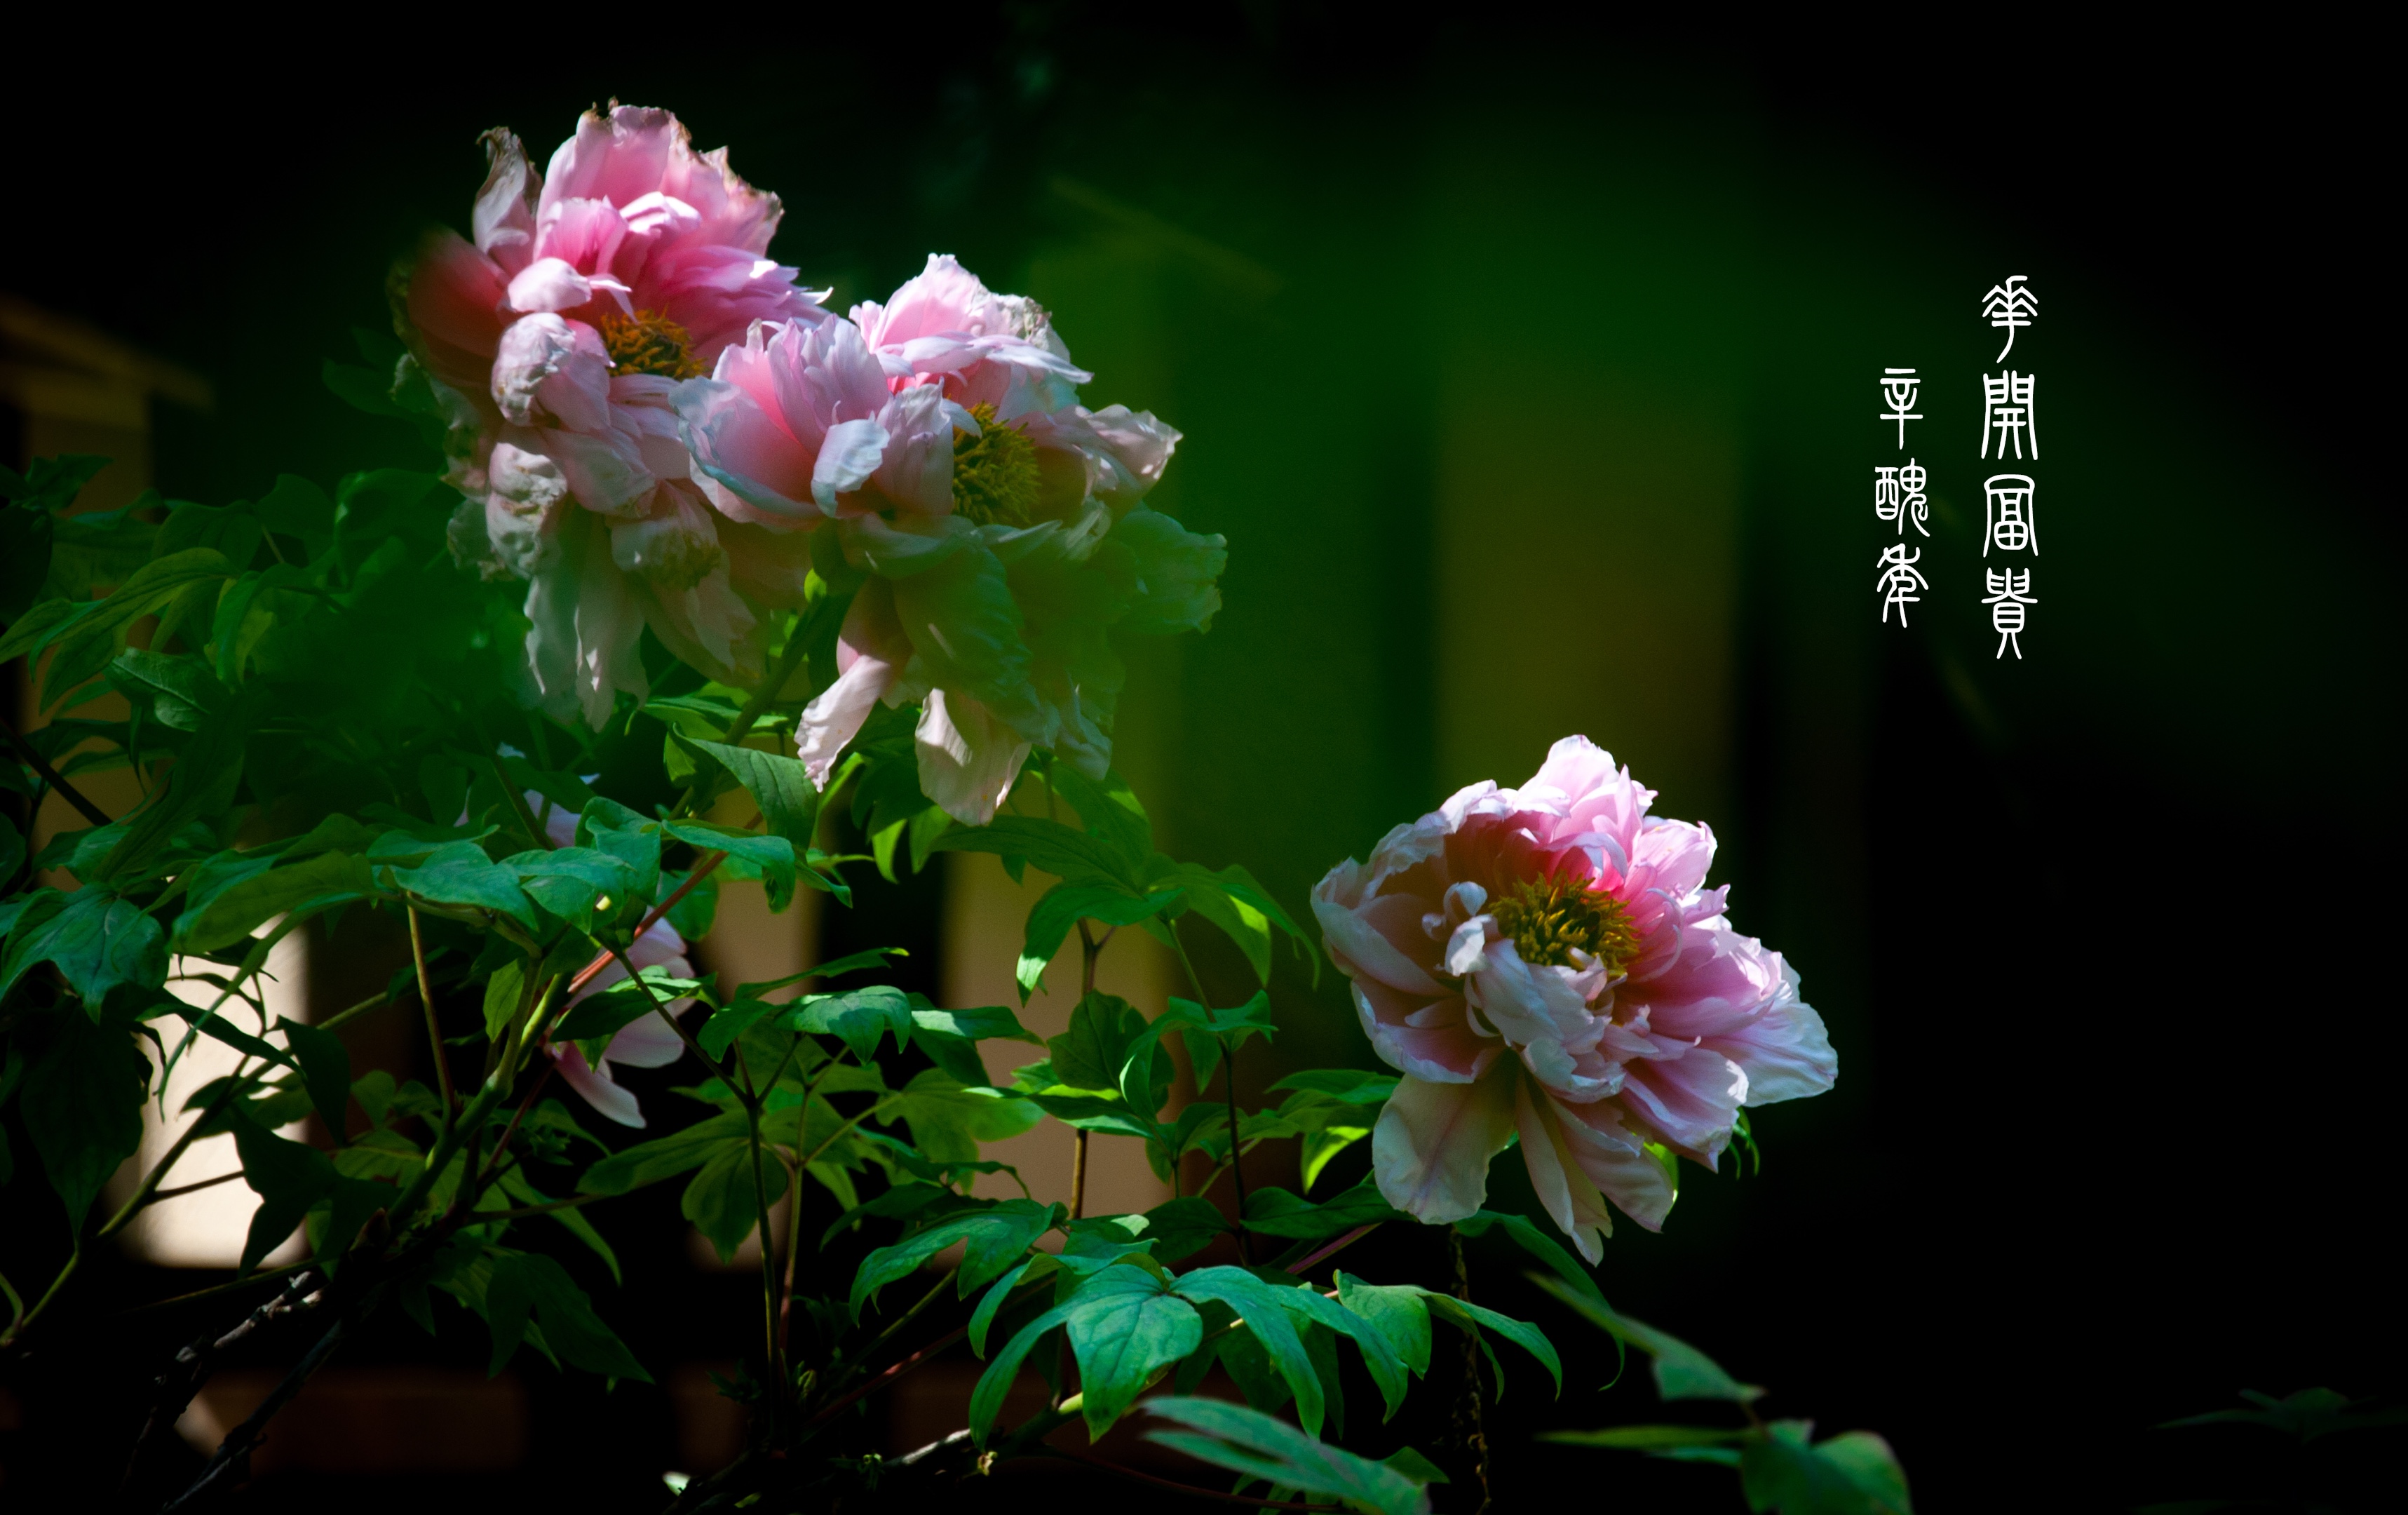 唐代诗人李正封所写的《牡丹诗》五言绝句,把牡丹花早晨含露珠的醉态